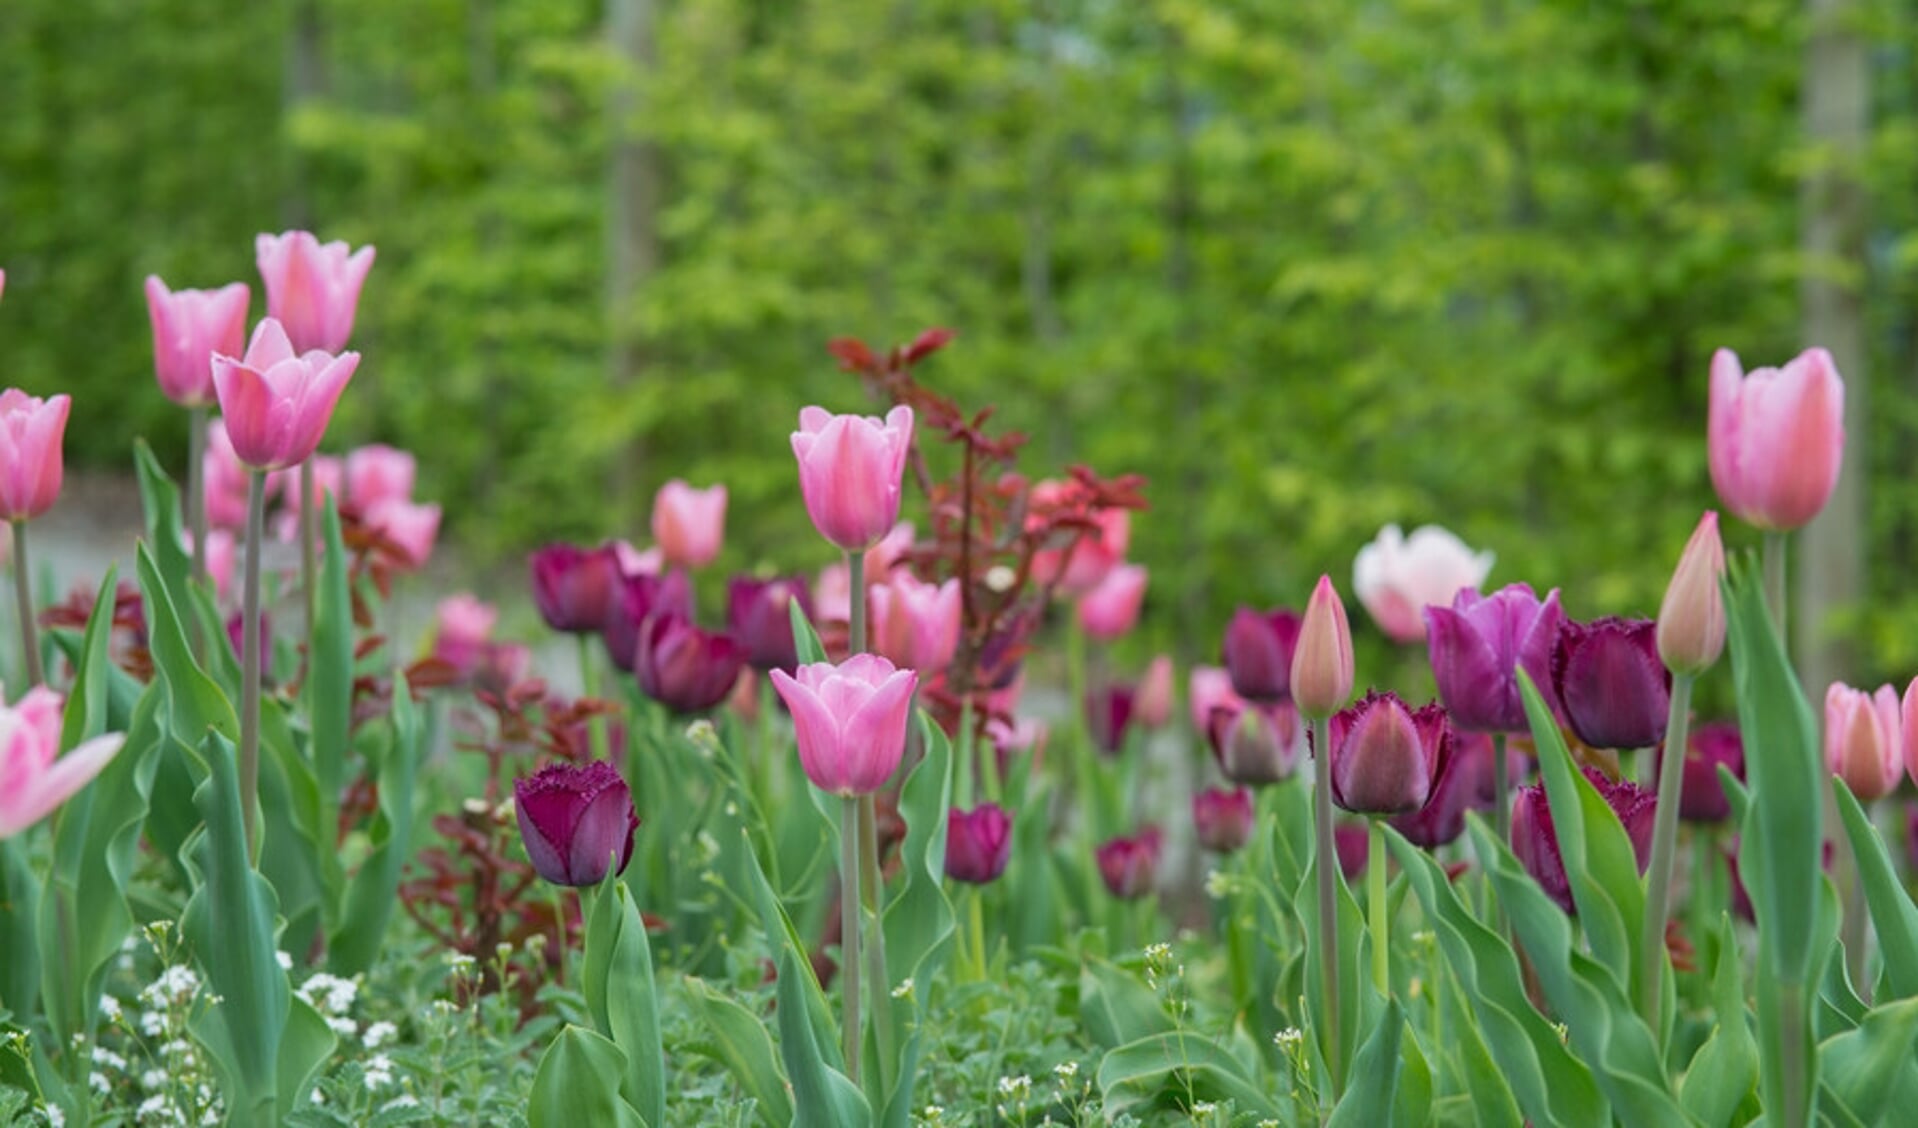 Of je nu houdt van tulpen of hyacinten: in het najaar creëer je de mooiste lentetuin. 